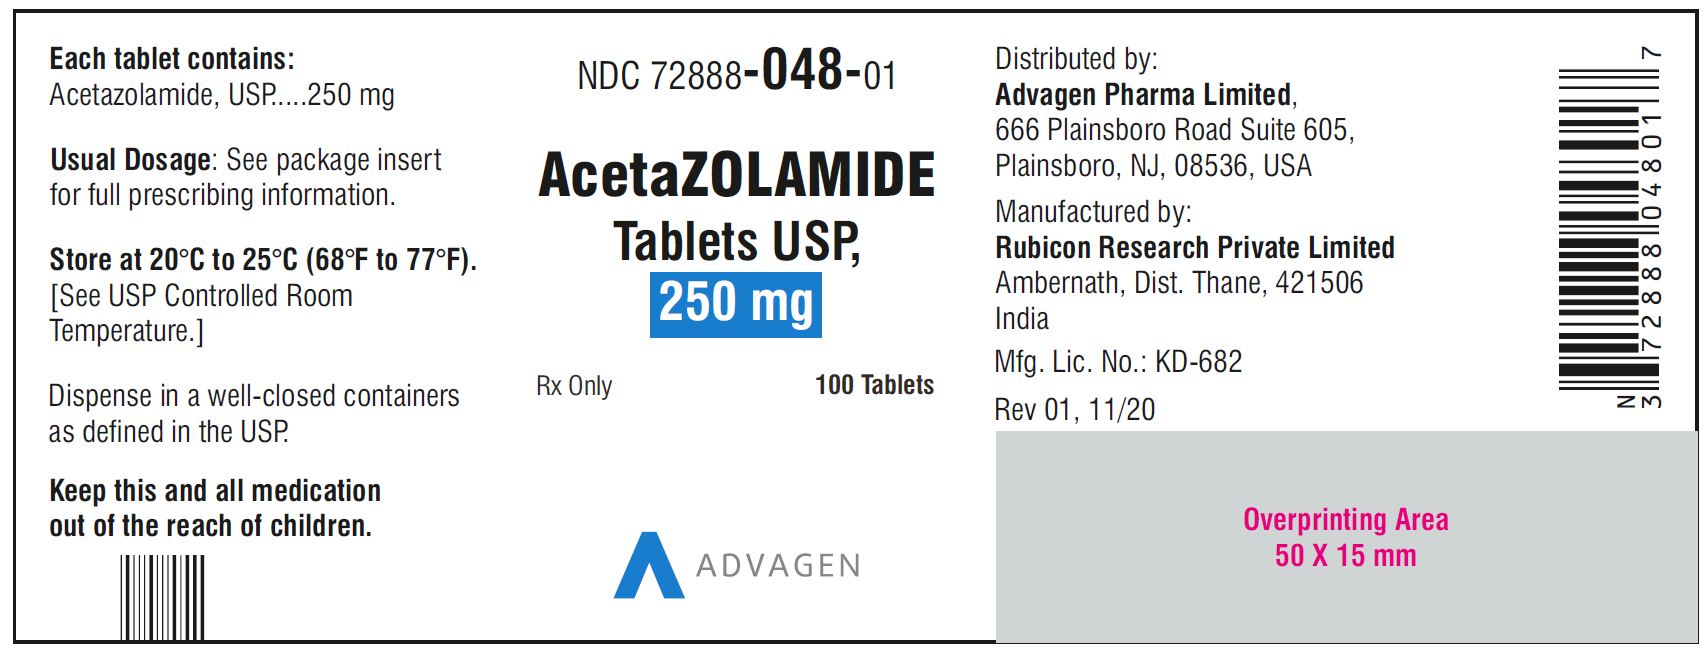 AcetaZOLAMIDE Tablets USP, 250 mg - NDC 72888-048-01 - 100 Tablets Bottle Label